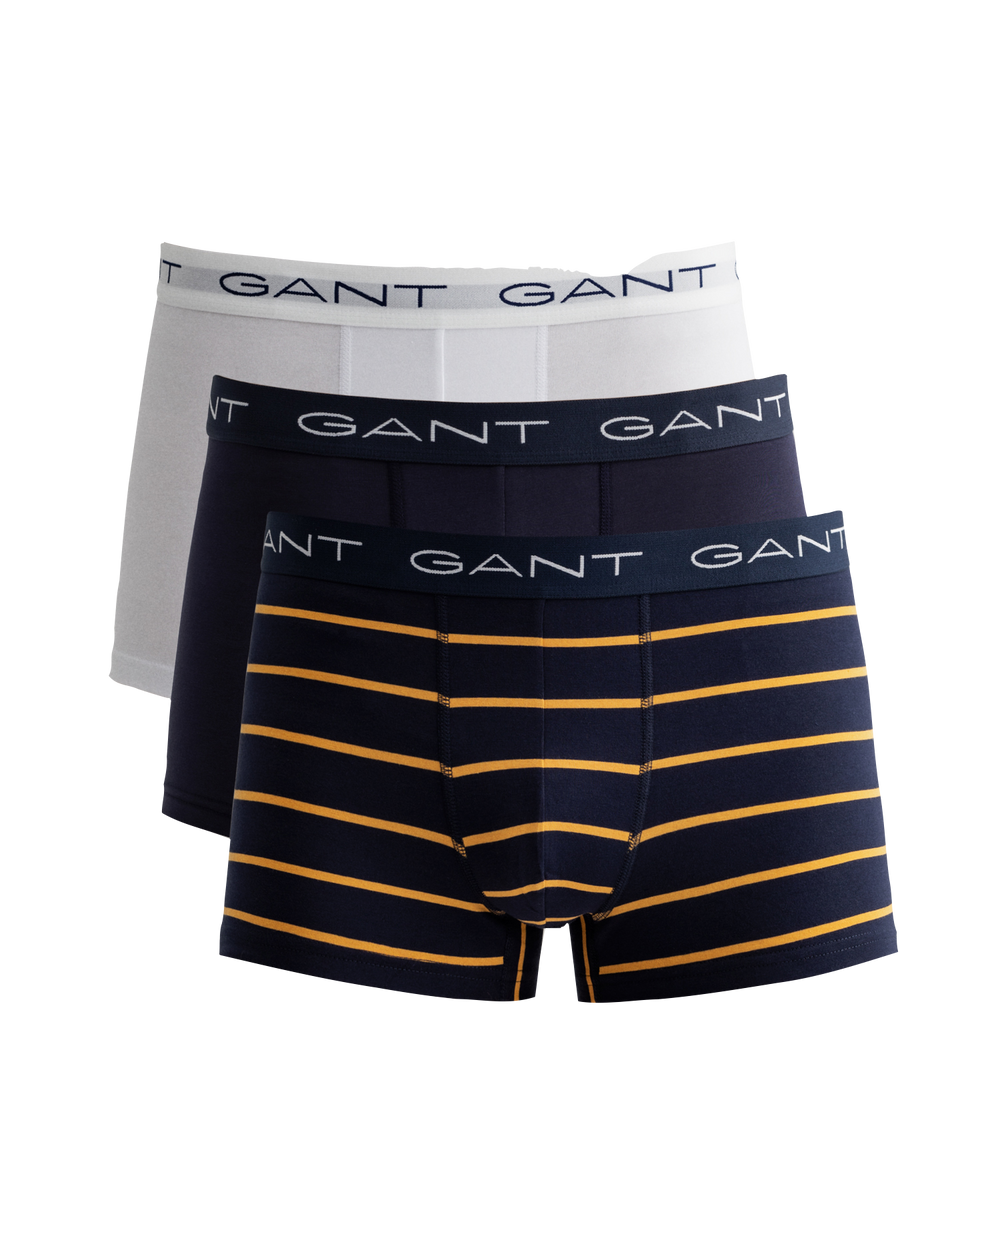 Gant Stripe Trunk Men’s 3 Pack Gift Box